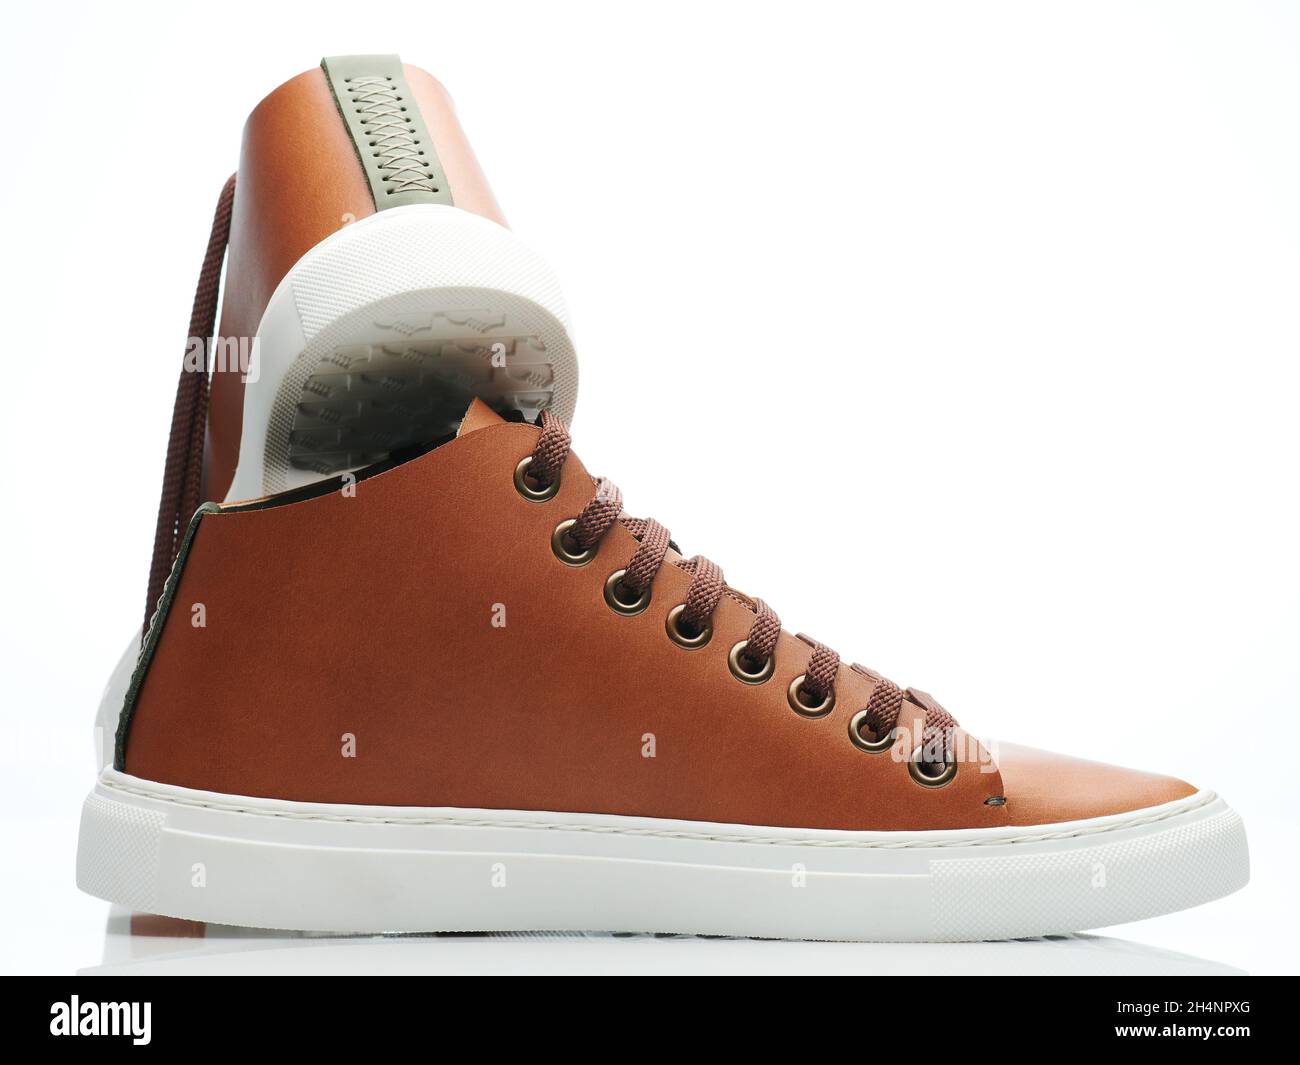 Élégantes chaussures sneaker en cuir marron sur fond blanc studio Banque D'Images